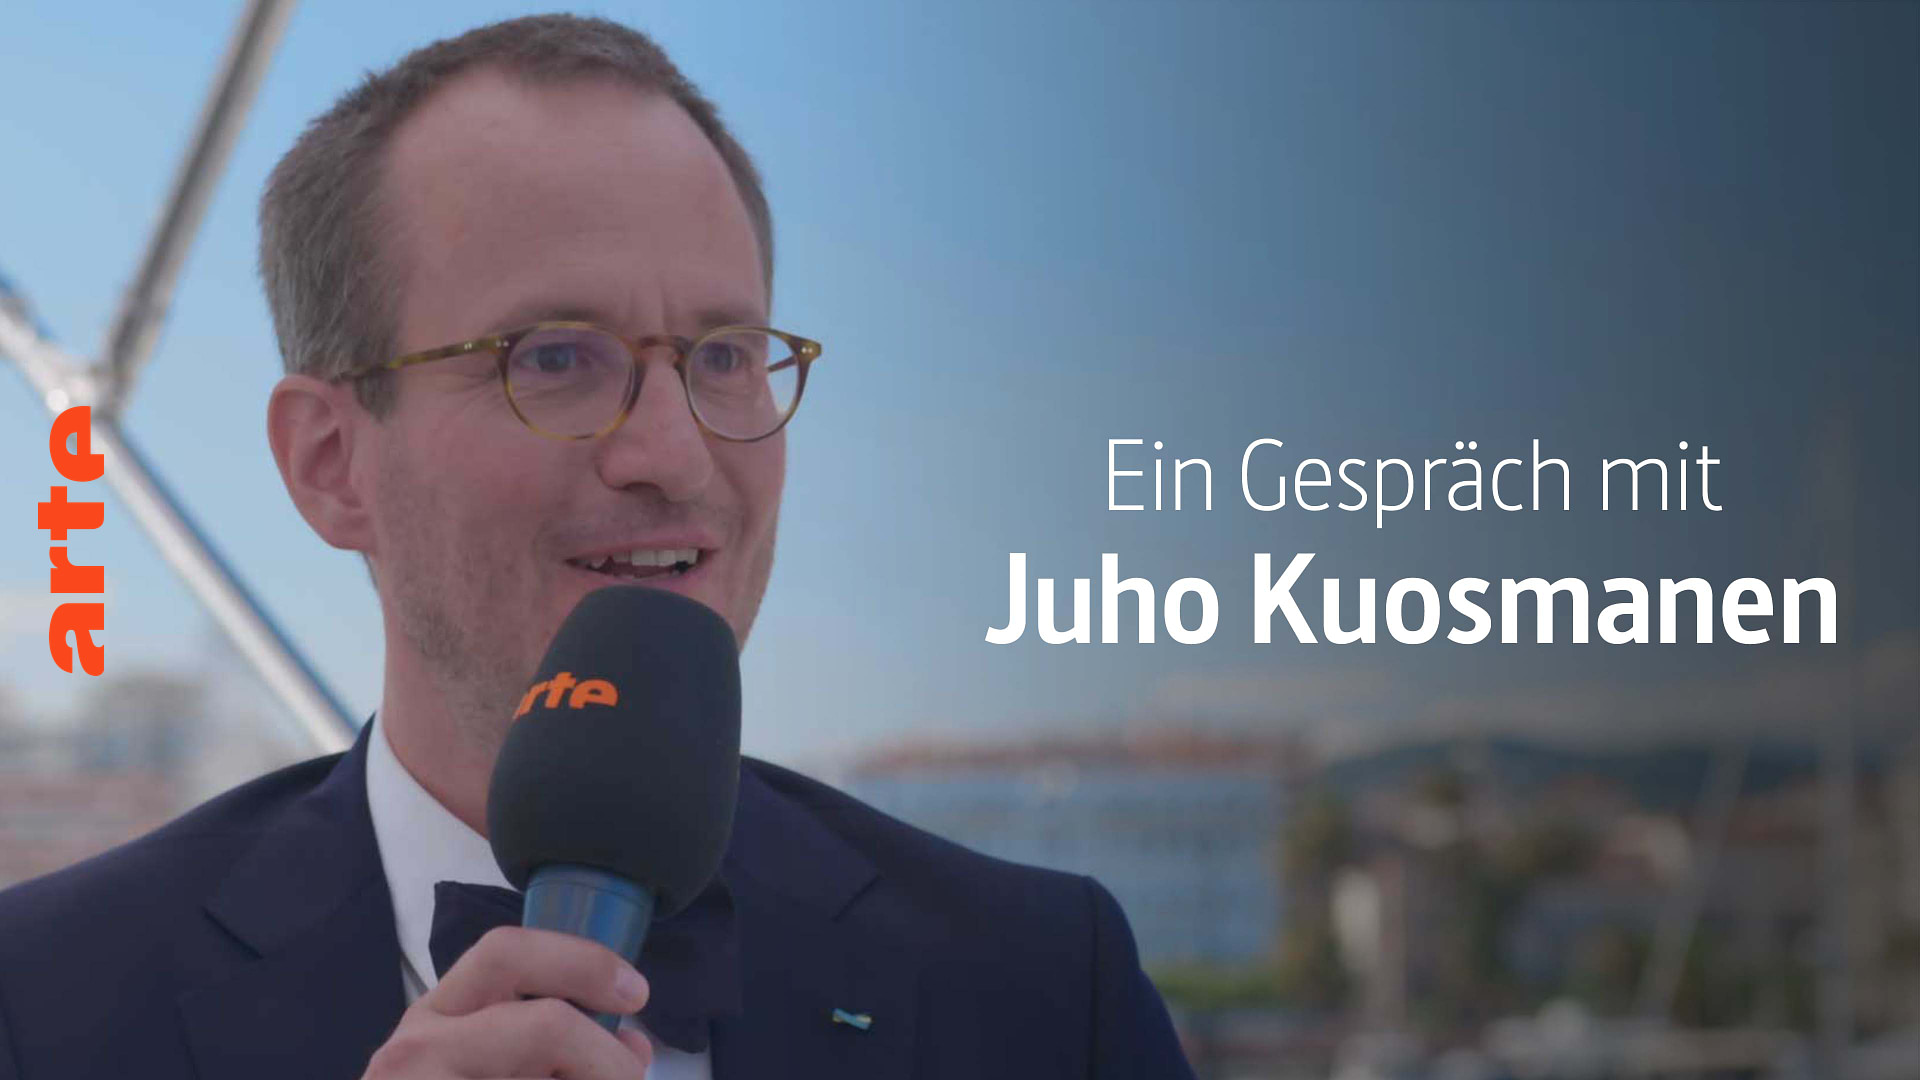 Ein Gespräch mit Juho Kuosmanen über Compartiment n°6 - Grand Prix ex aequo